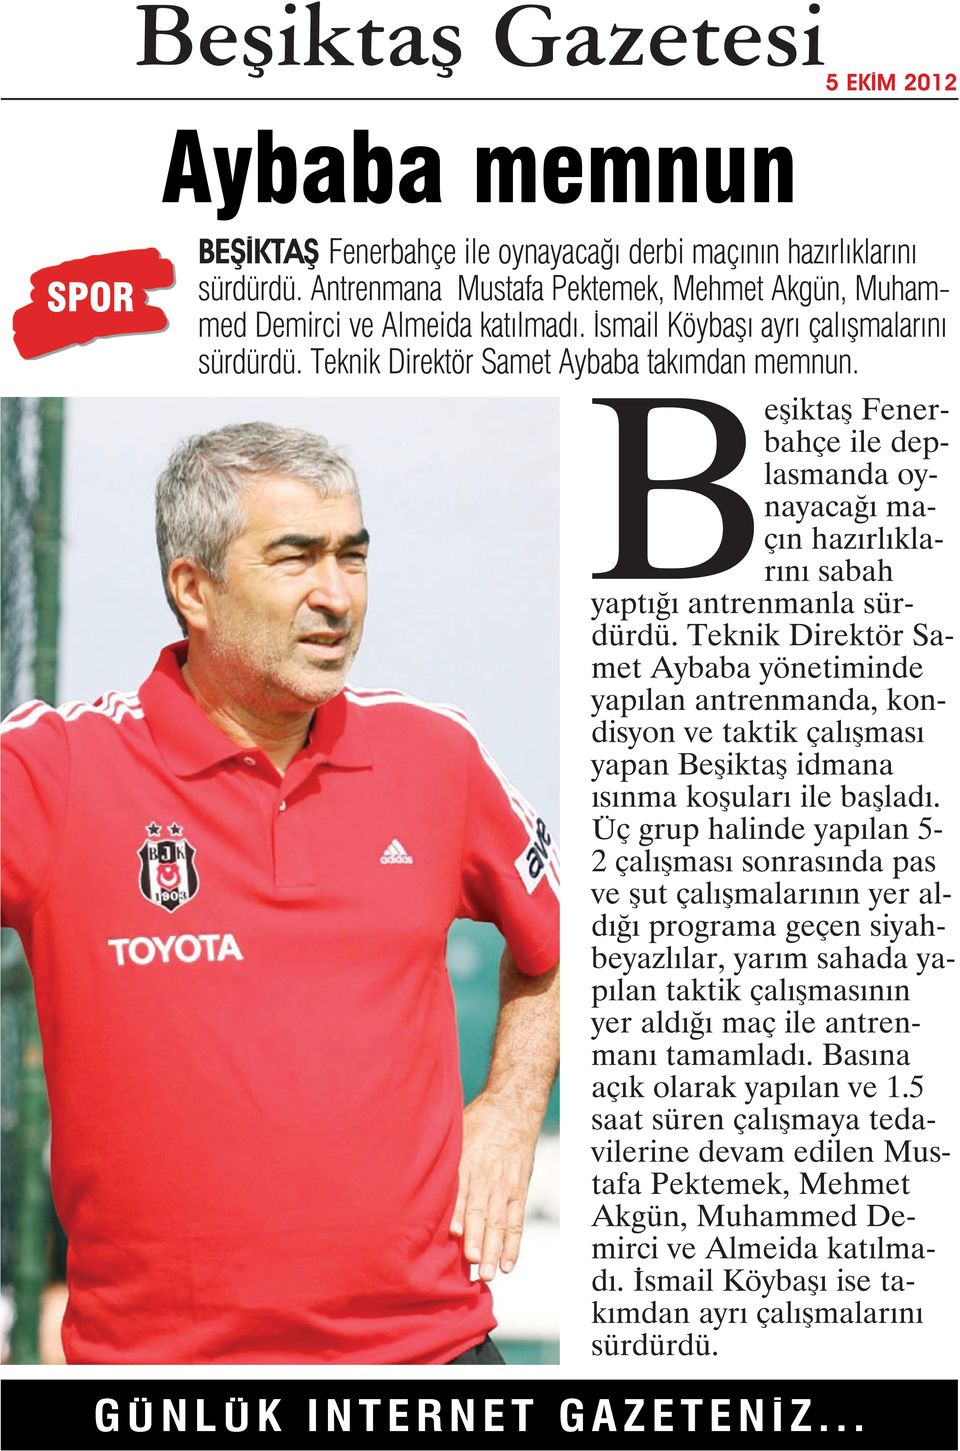 Teknik Direktör Samet Aybaba yönetiminde yapılan antrenmanda, kondisyon ve taktik çalışması yapan Beşiktaş idmana ısınma koşuları ile başladı.